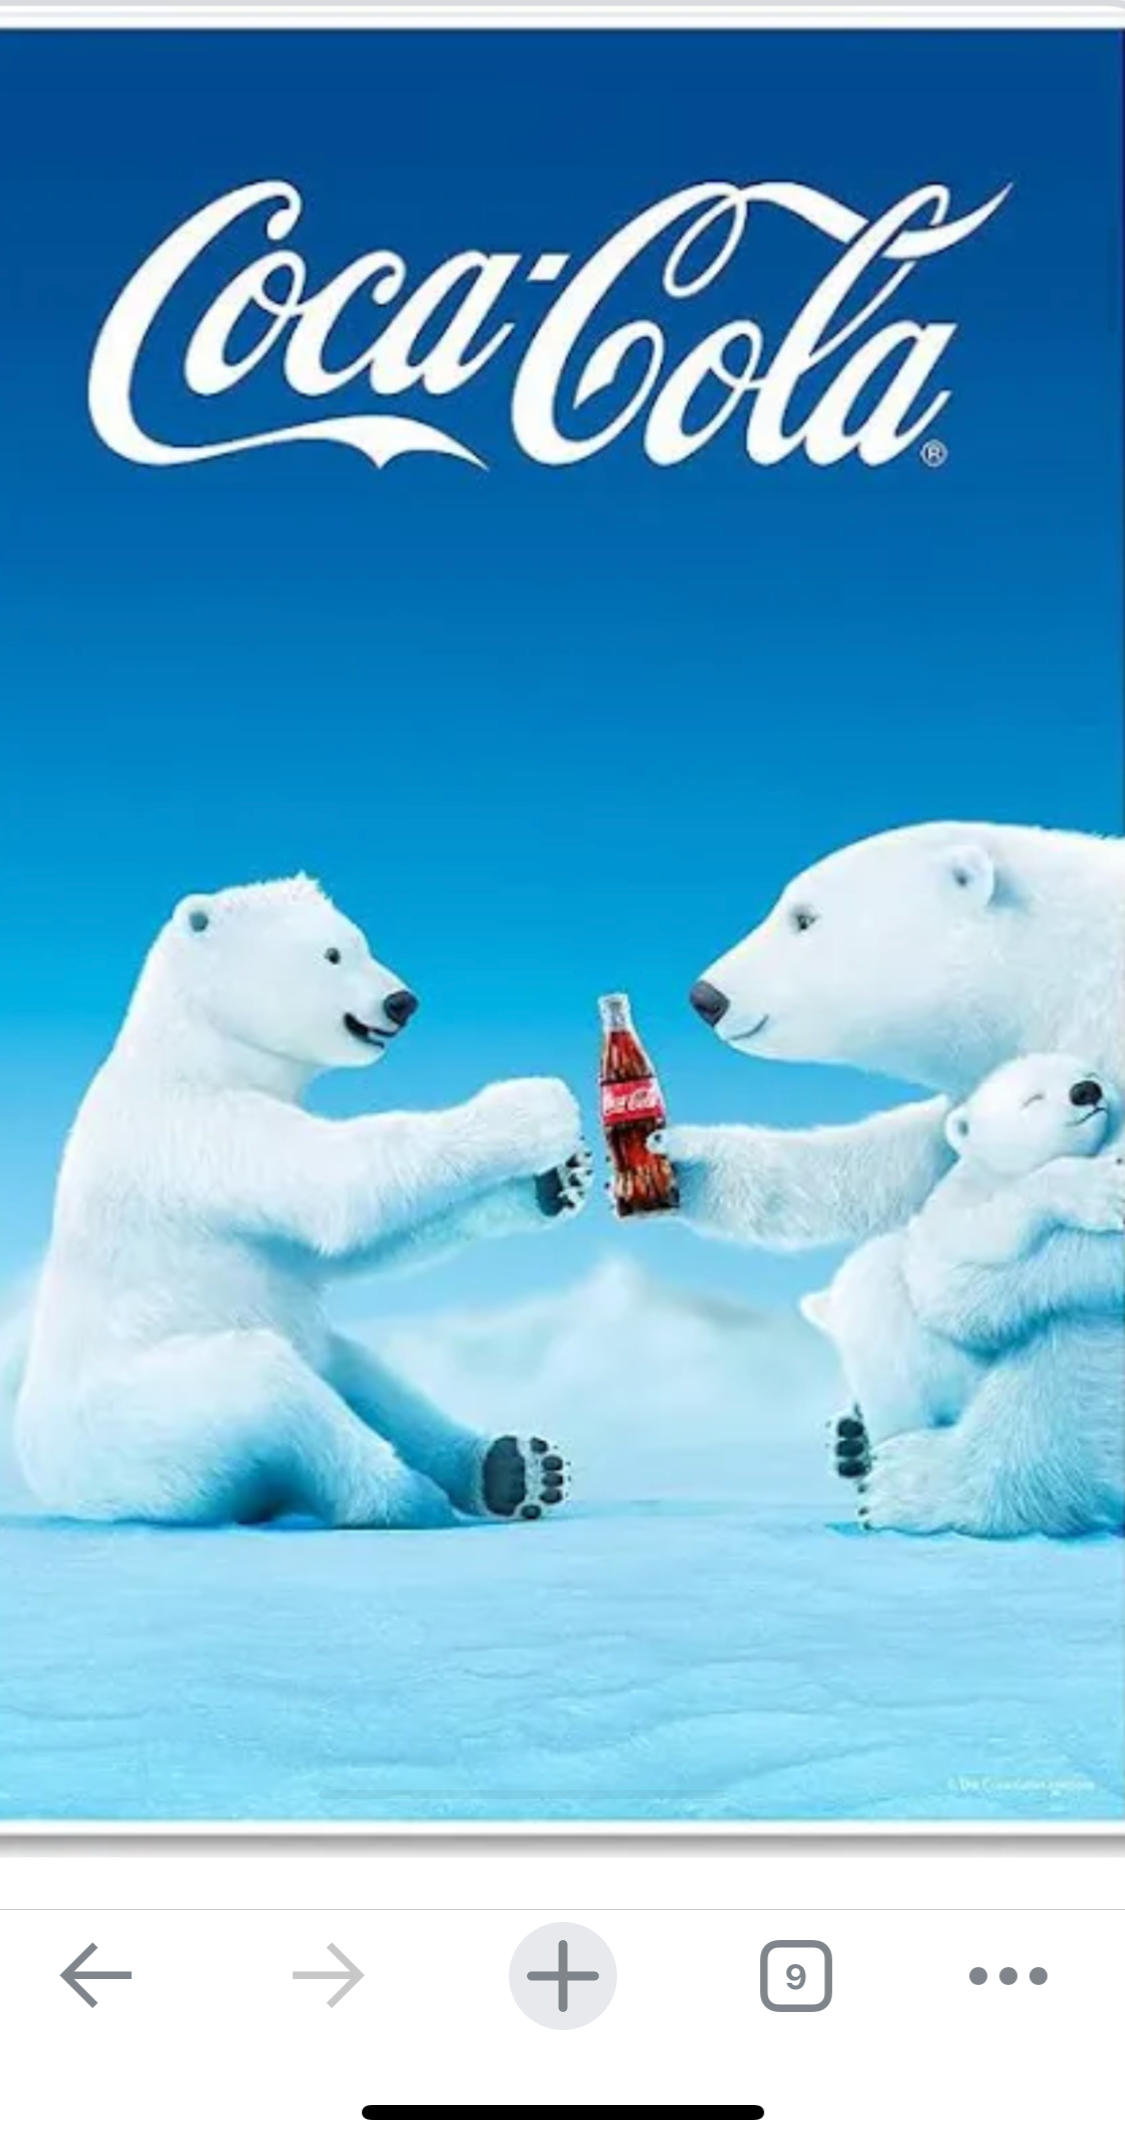 High Quality Polar bear Coca-Cola Blank Meme Template